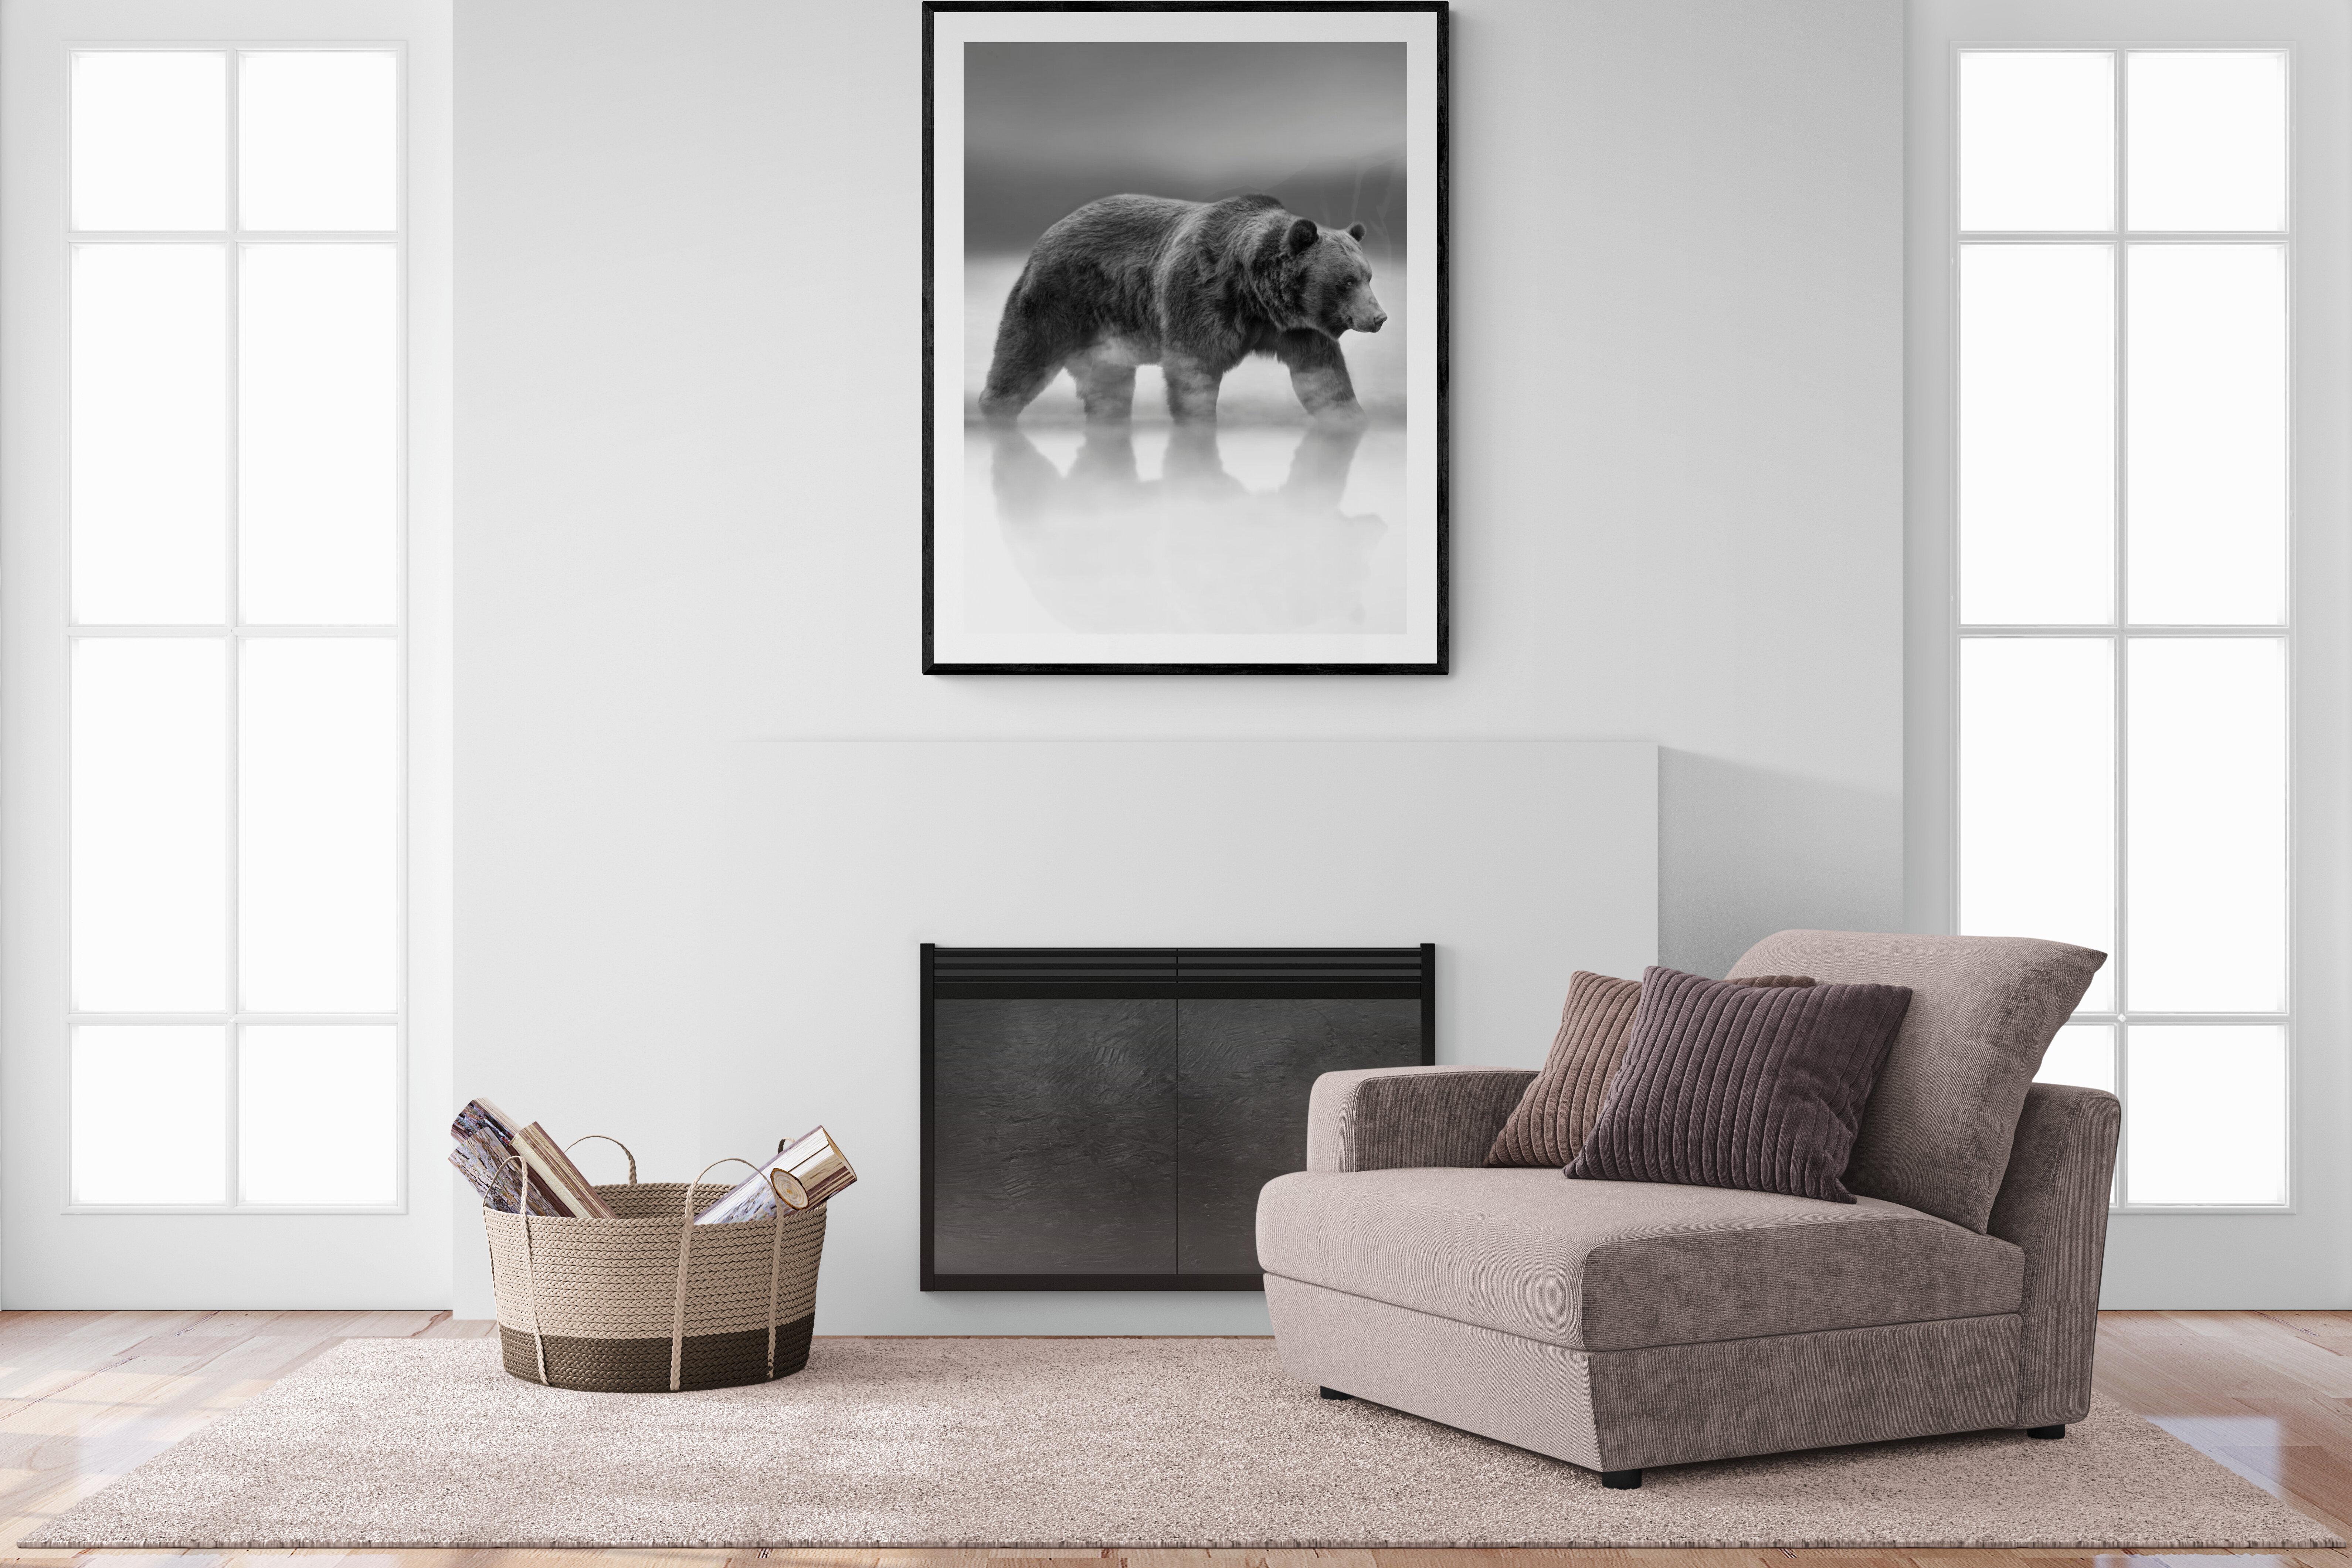 Il s'agit d'une photographie contemporaine d'un ours Kodiak.  
Ceci a été tourné sur l'île de Kodiak en 2019. 
36x48 Edition de 12
Papier pigmentaire d'archivage 
Encres d'archivage
Signé et numéroté par l'artiste.
Encadrement disponible.